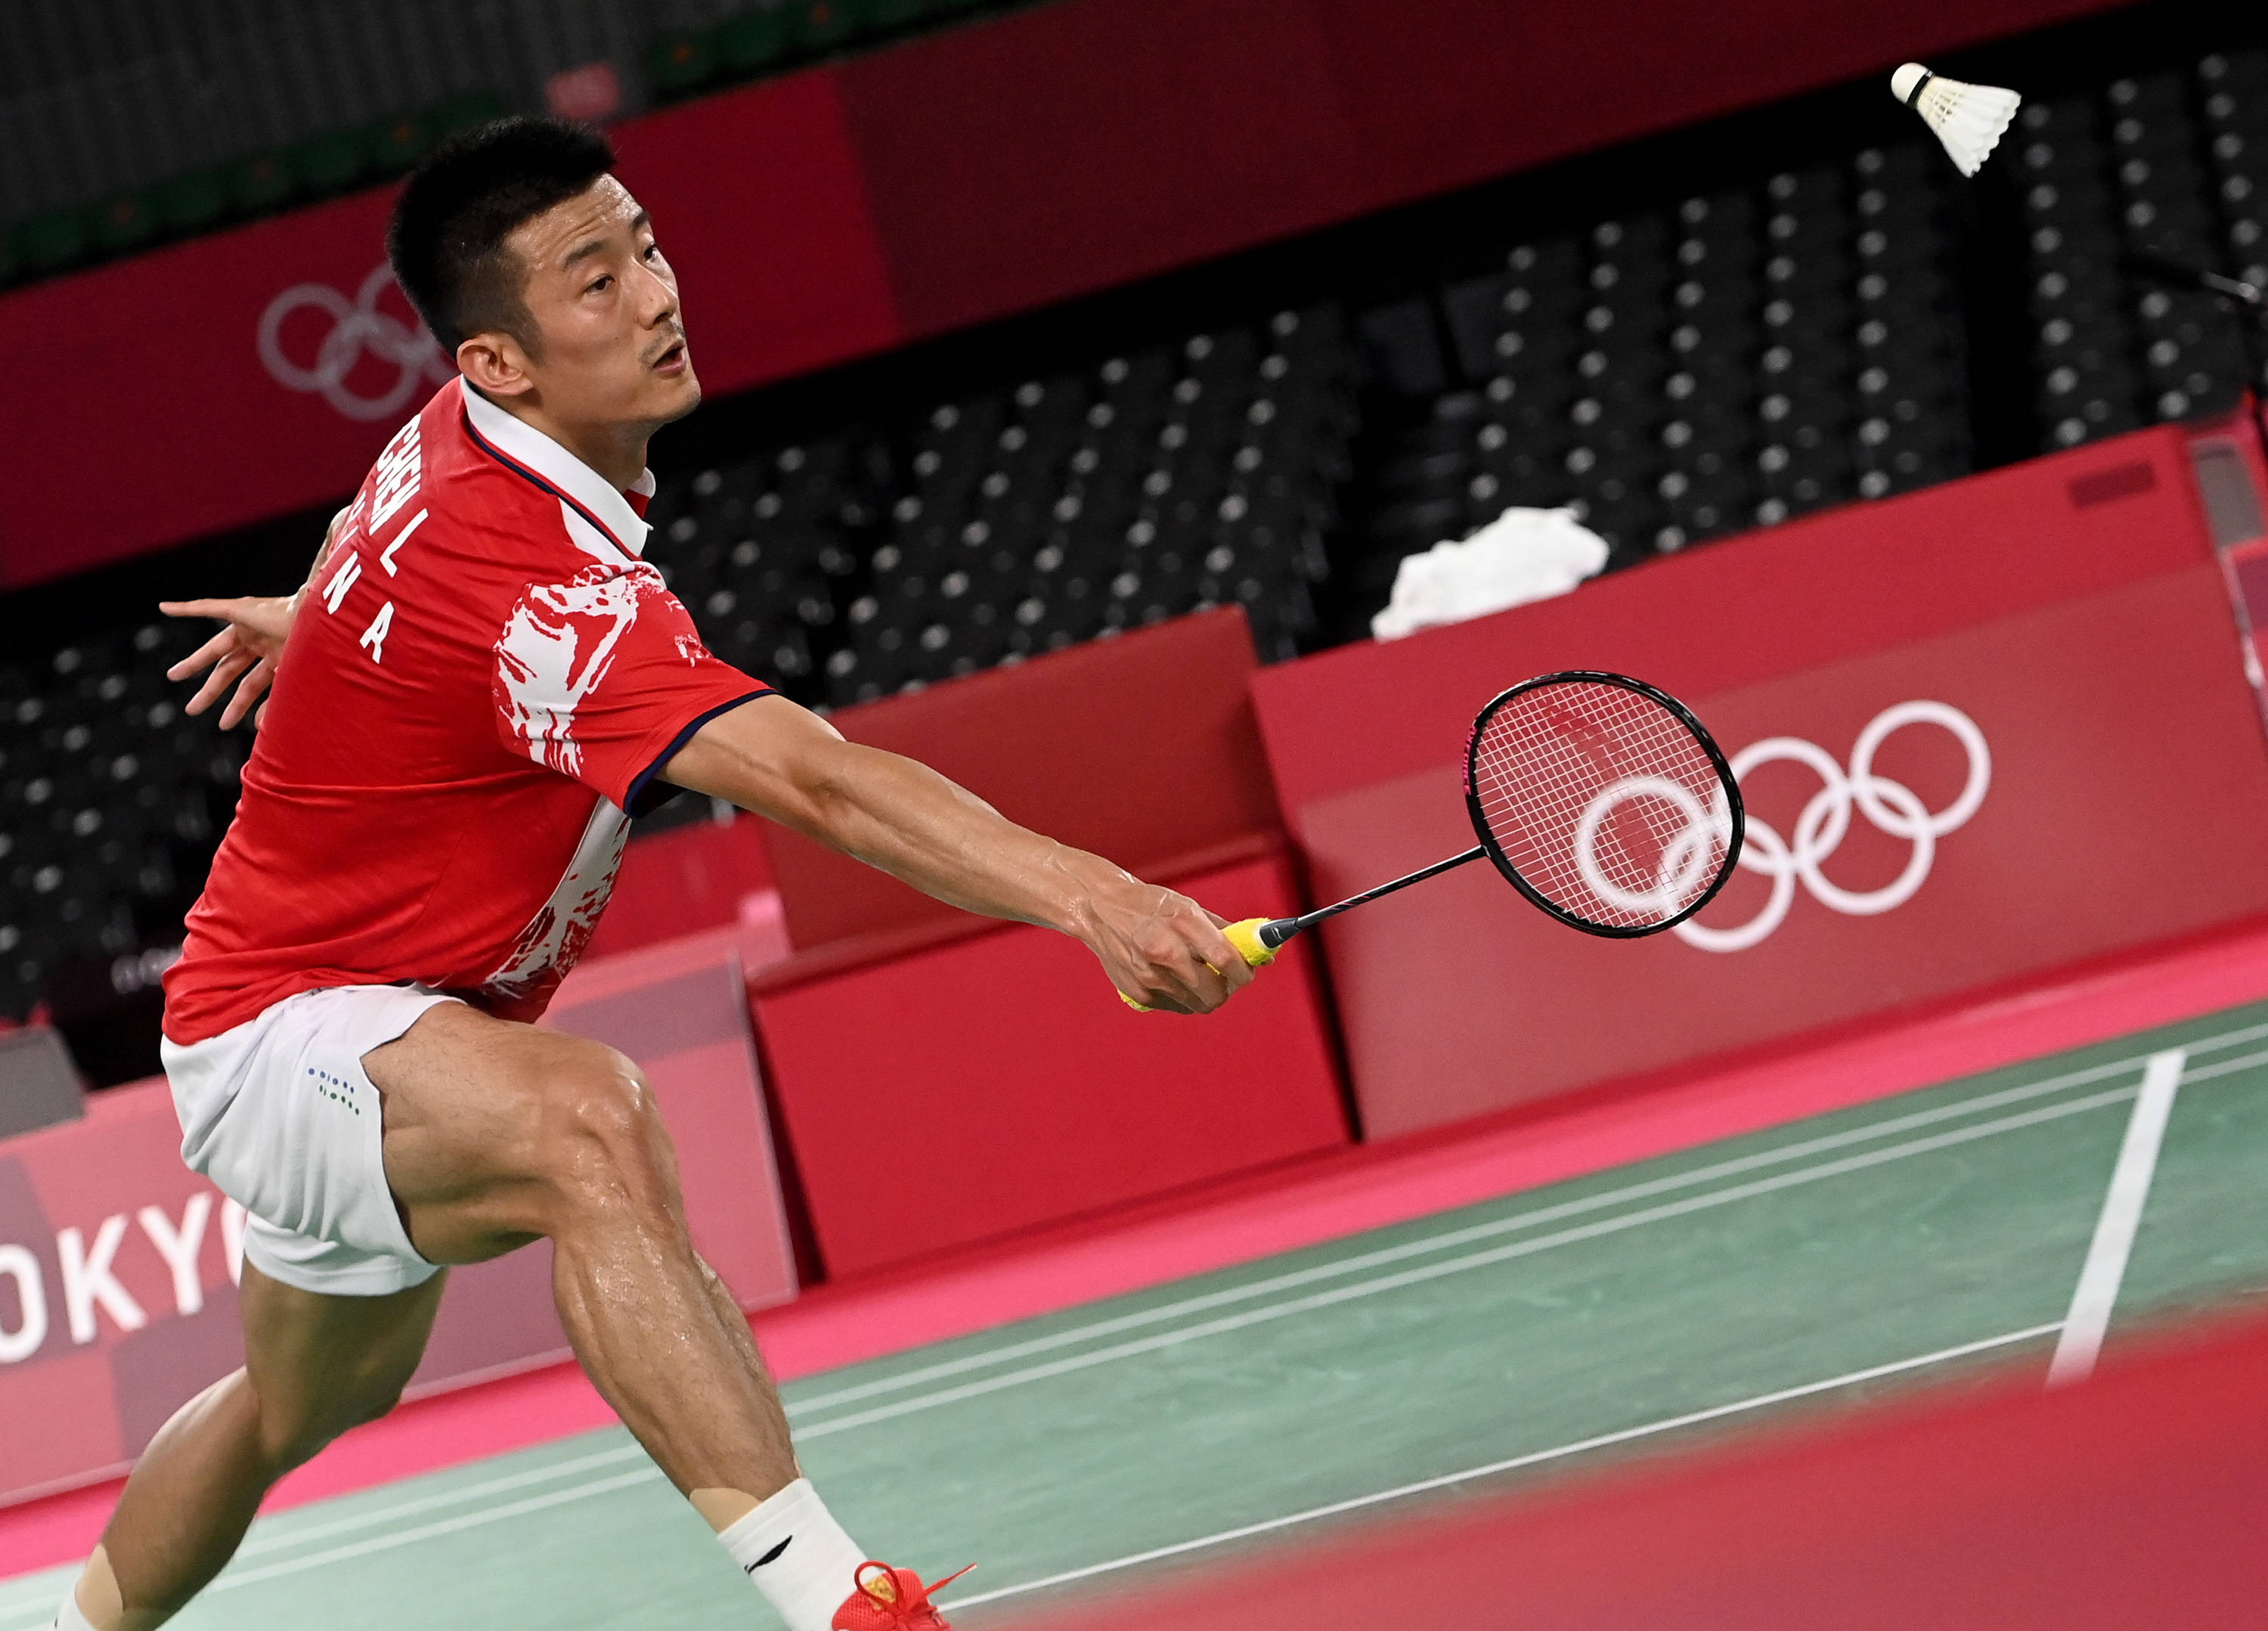 当日,在东京奥运会羽毛球男子单打小组赛中,中国选手谌龙以2比0战胜